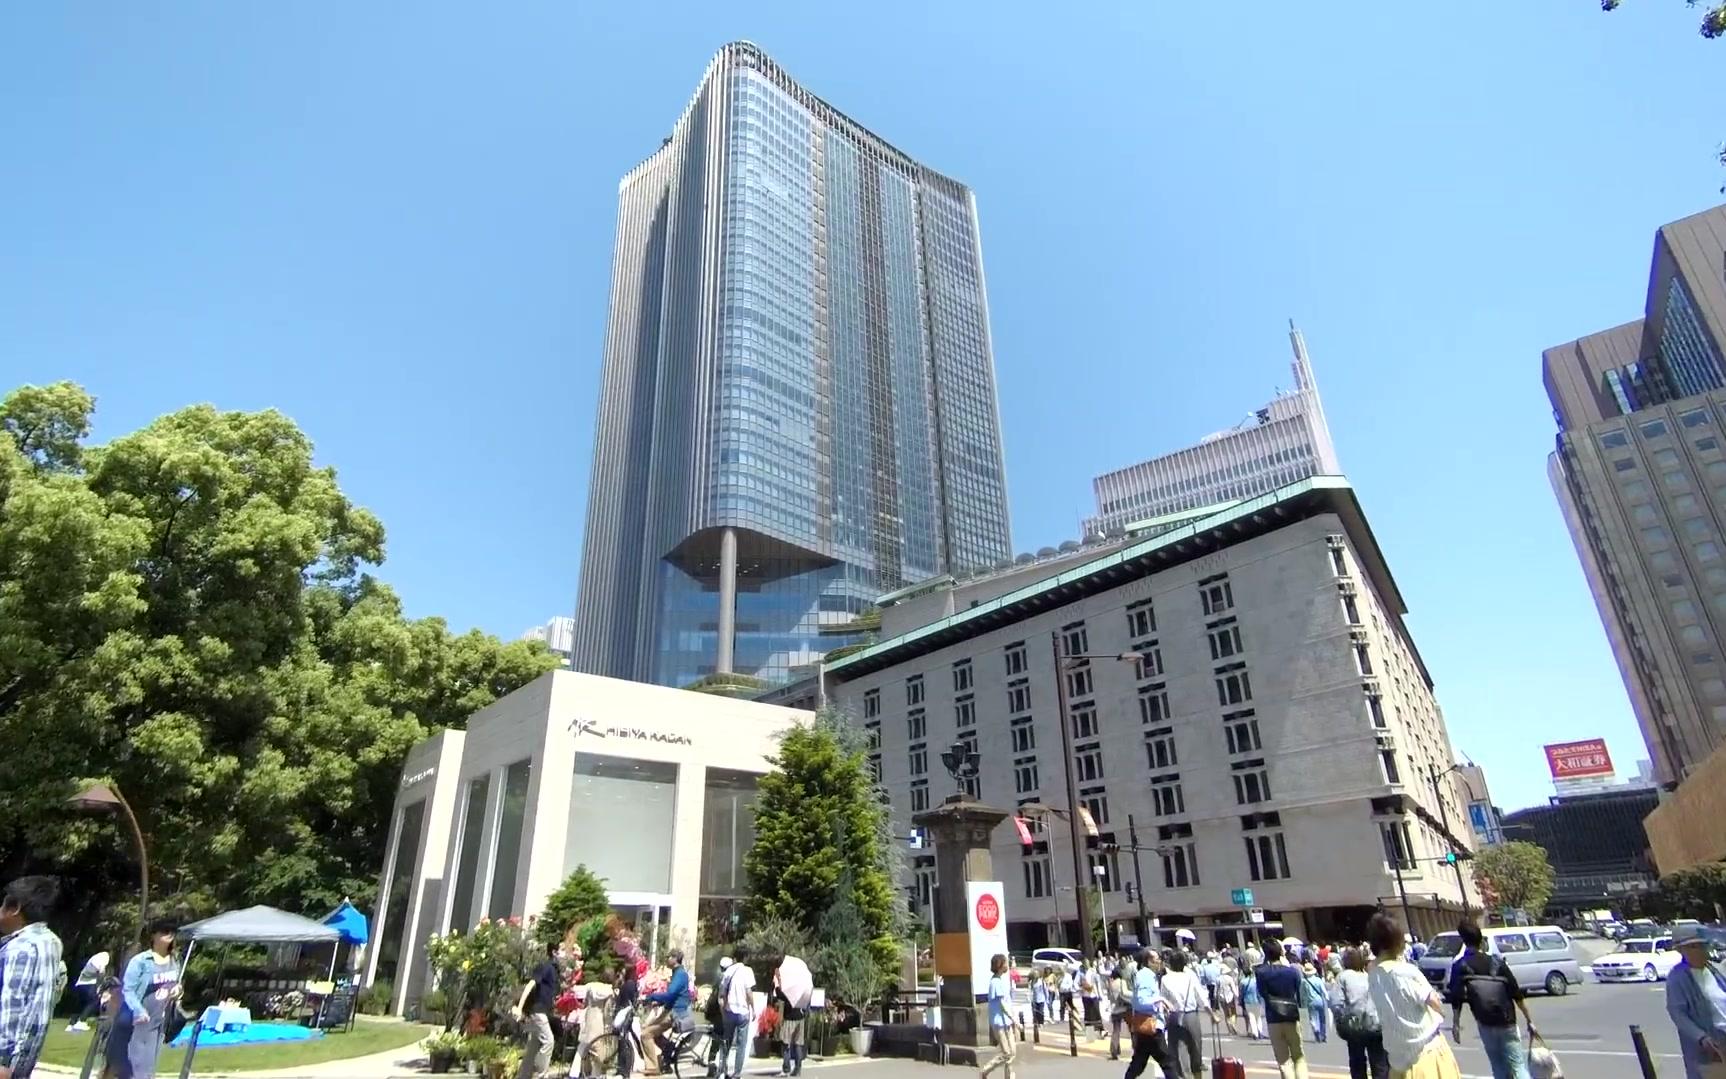 东京中城大厦图片